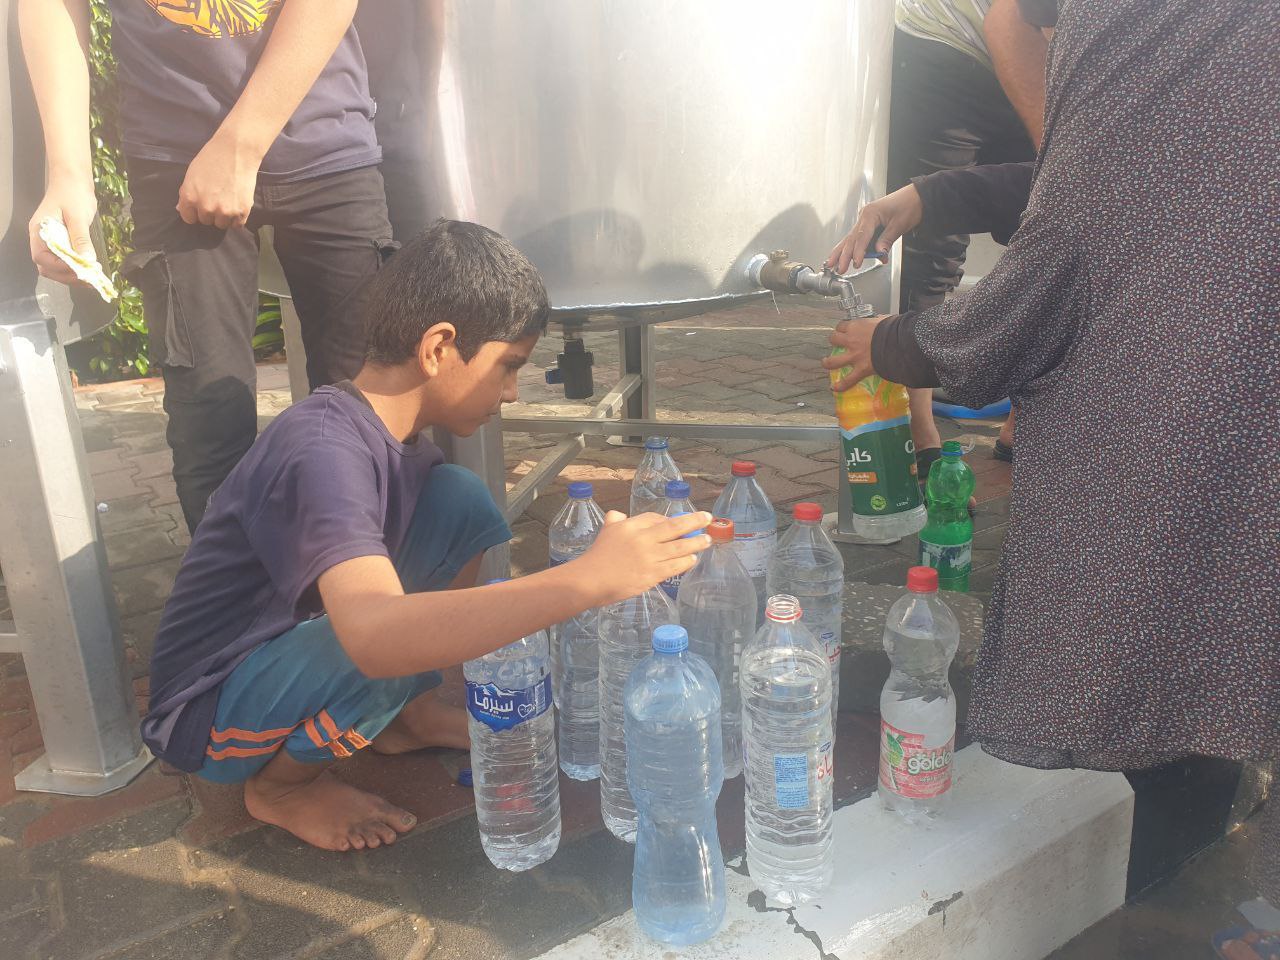 أطفال ونساء يتوافدون إلى محطة تحلية المياه في رفح جنوب قطاع غزة، لتعبئة الحد الأدنى من احتياجاتهم في ظل قطع الاحتلال إمدادات المياه عن القطاع. ومحطة تحلية المياه هذه مهددة بالتوقف عن العمل في أي لحظة بسبب أزمة الوقود